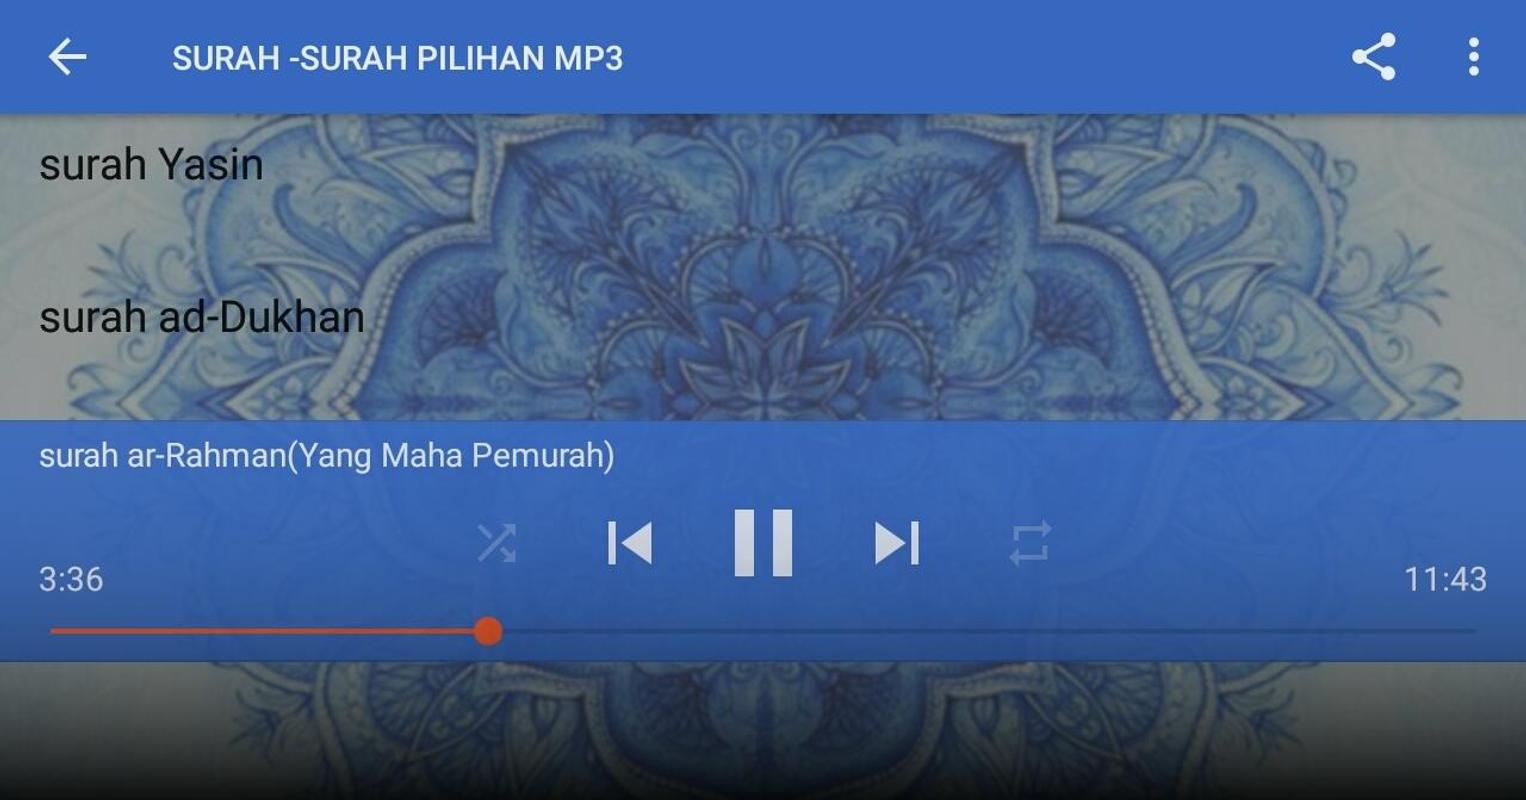 SURAH-SURAH PILIHAN MP3 APK Download - Free Music & Audio 